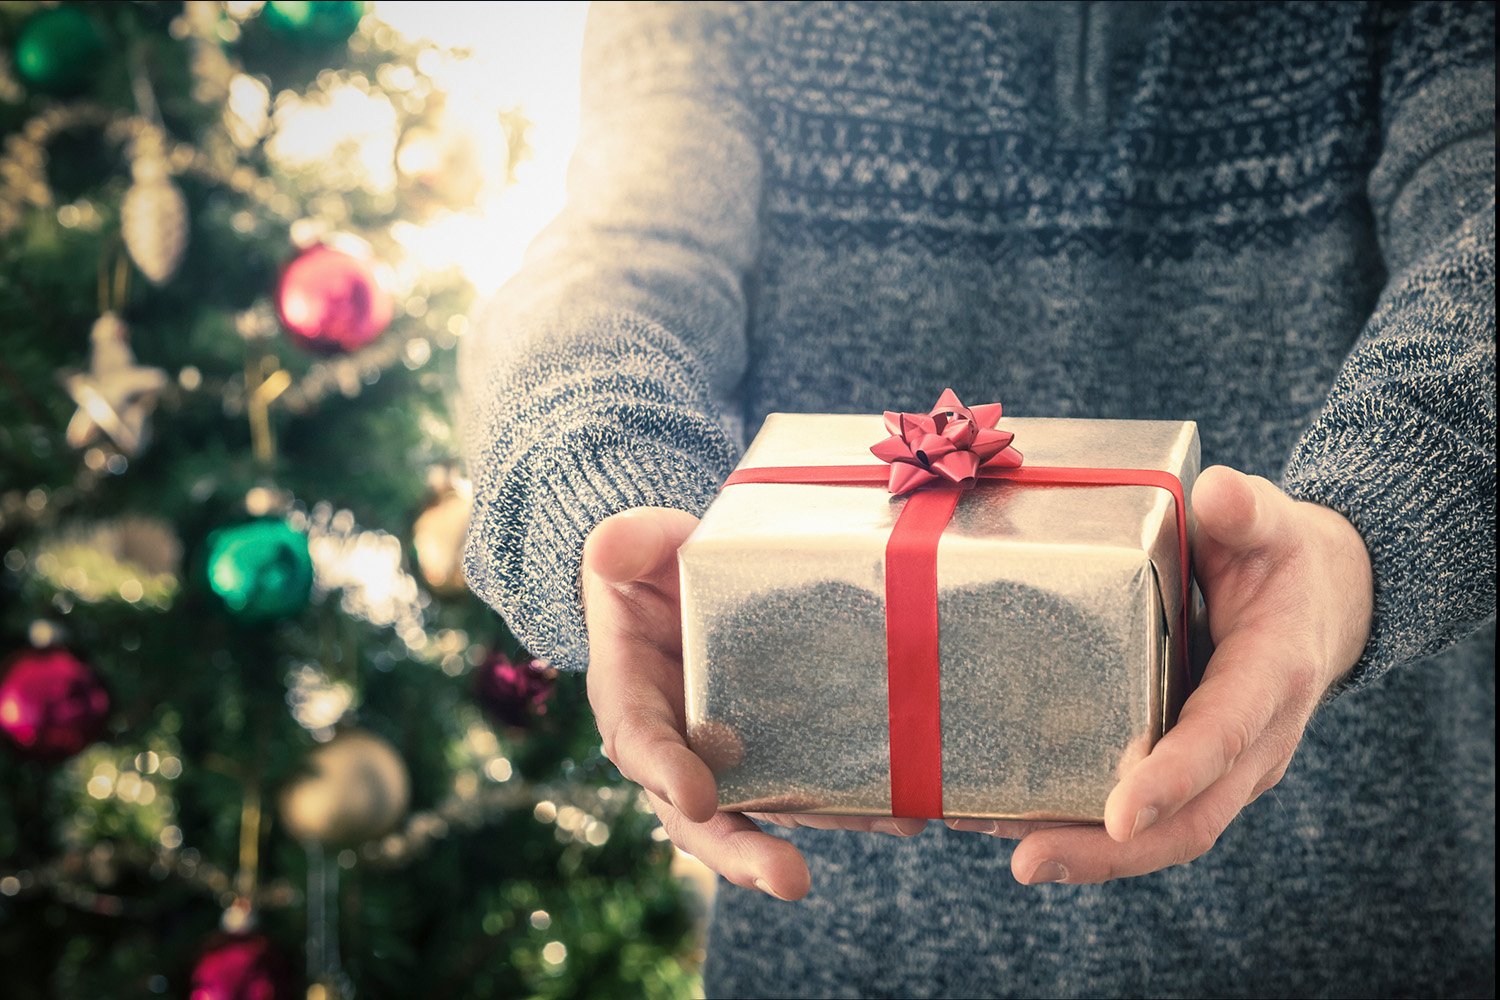 El 61% dels espanyols diu que un regal de segona mà li fa la mateixa il·lusió que un de nou